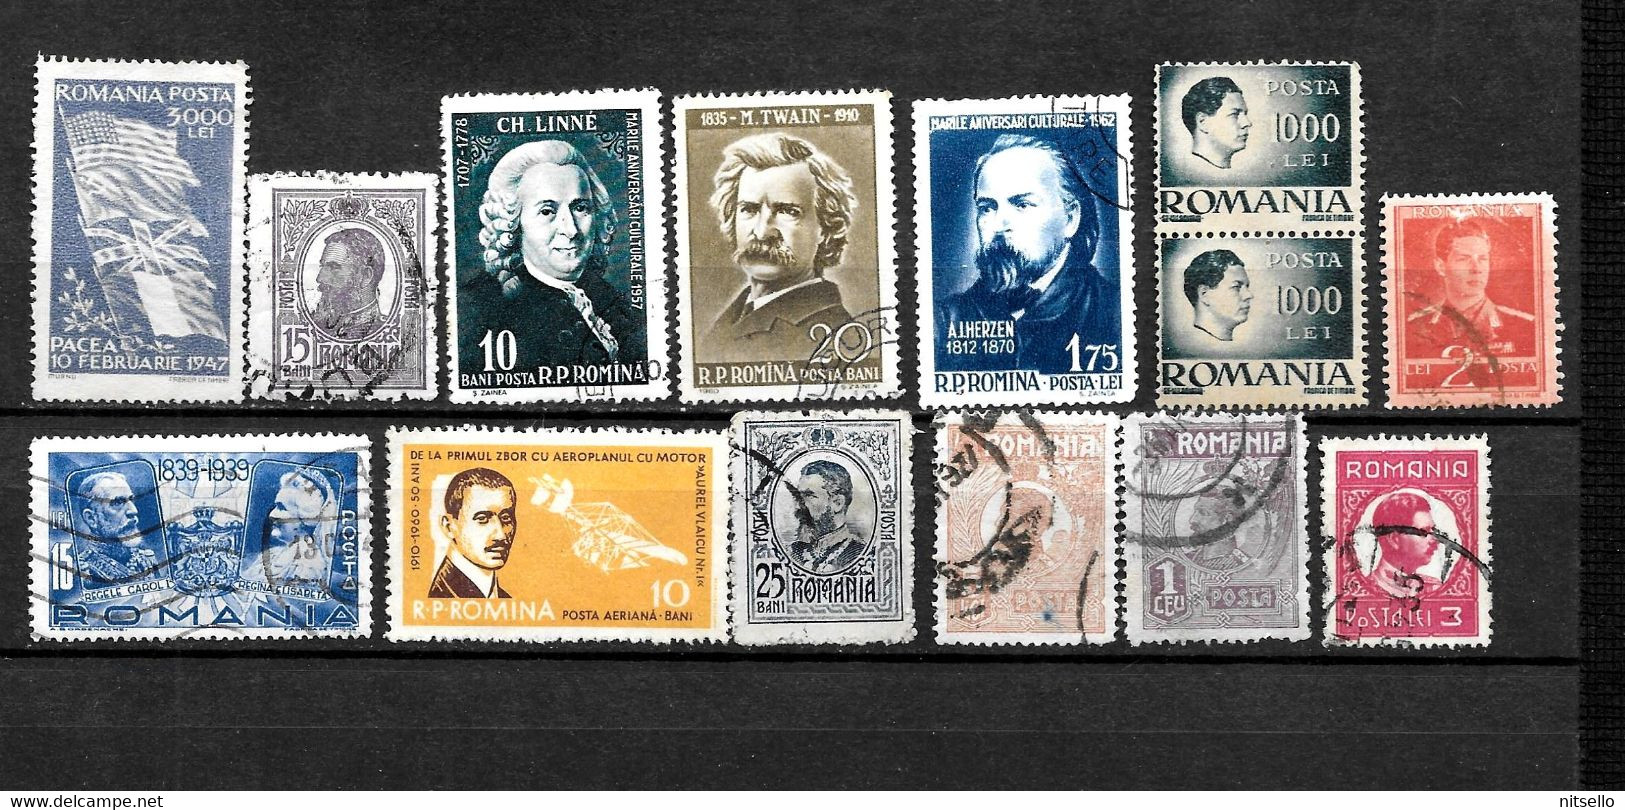 LOTE 1613  ///  RUMANIA   LOTE DE SELLOS ANTIGUOS A BAJO PRECIO     ¡¡¡¡ LIQUIDATION !!!! - Used Stamps